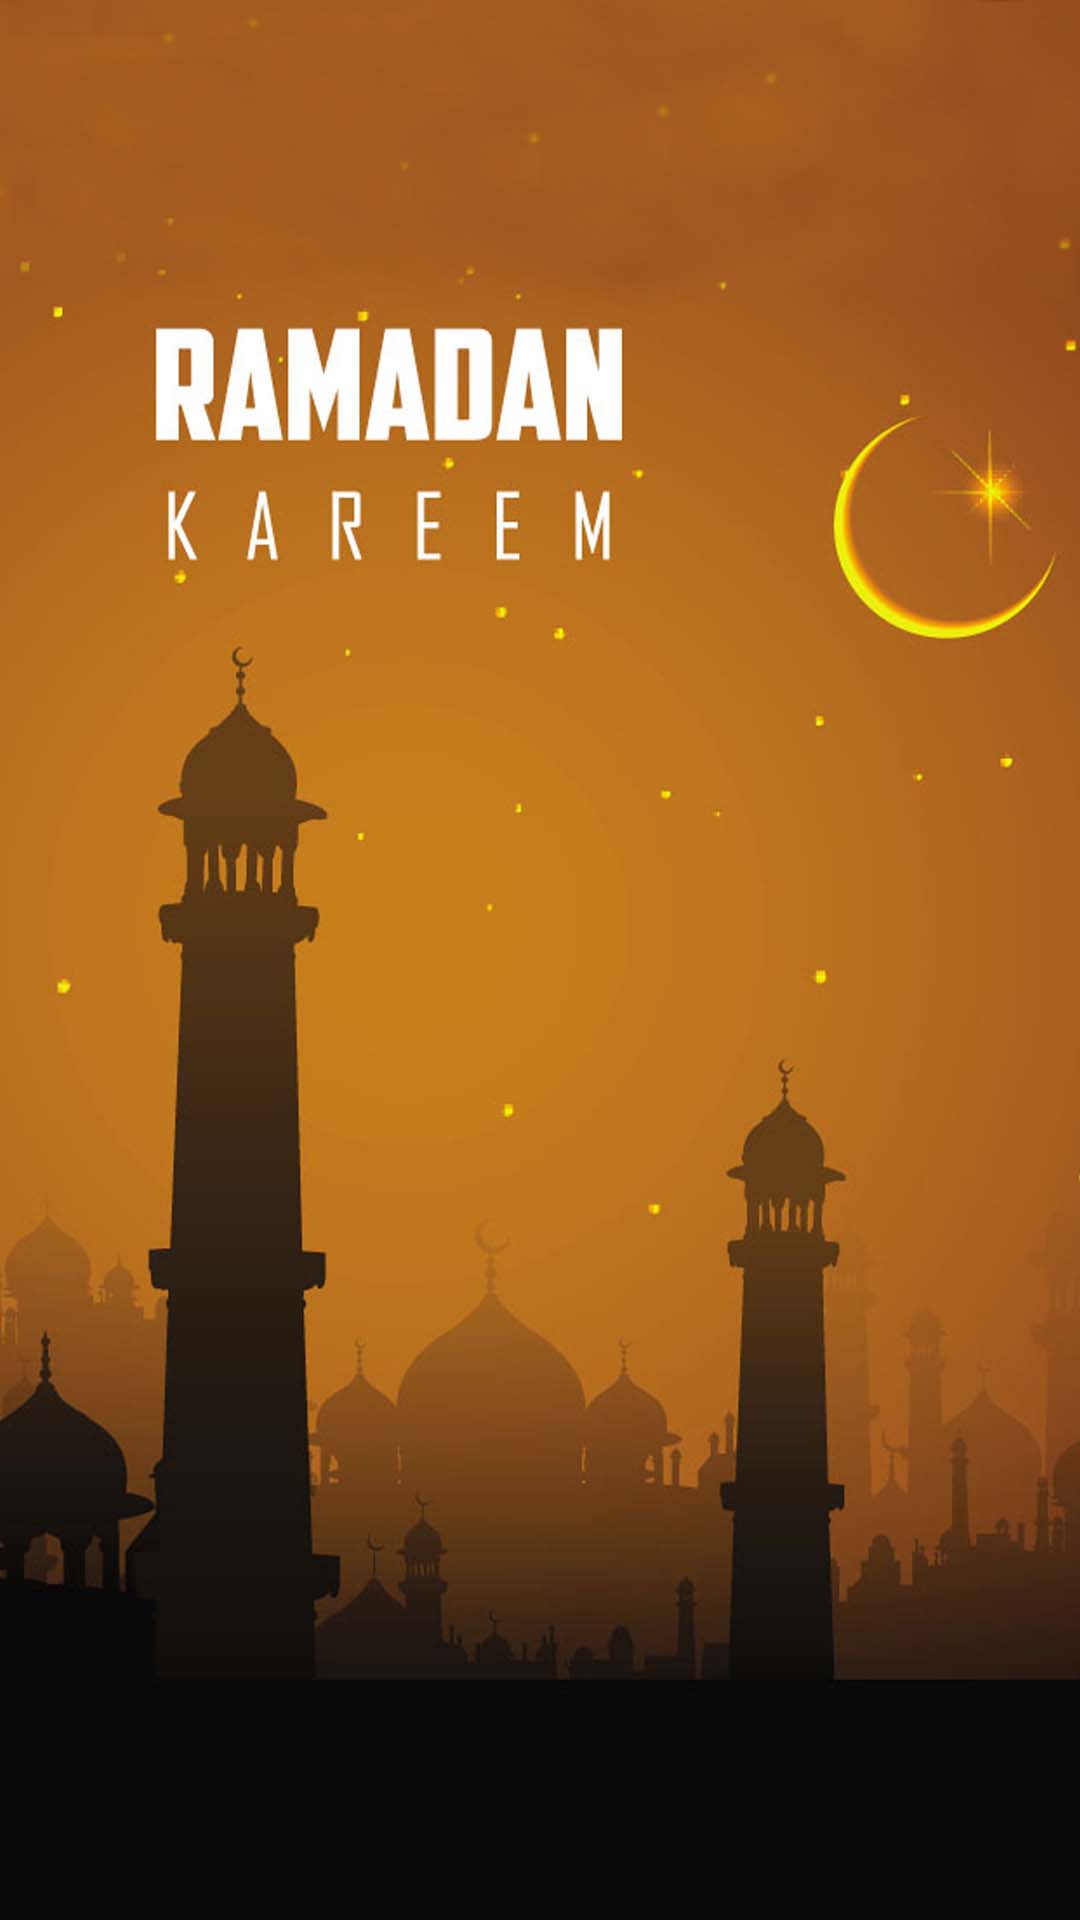 اجمل خلفيات الموبايل بمناسبه شهر رمضان 2020 Ers-HD-7